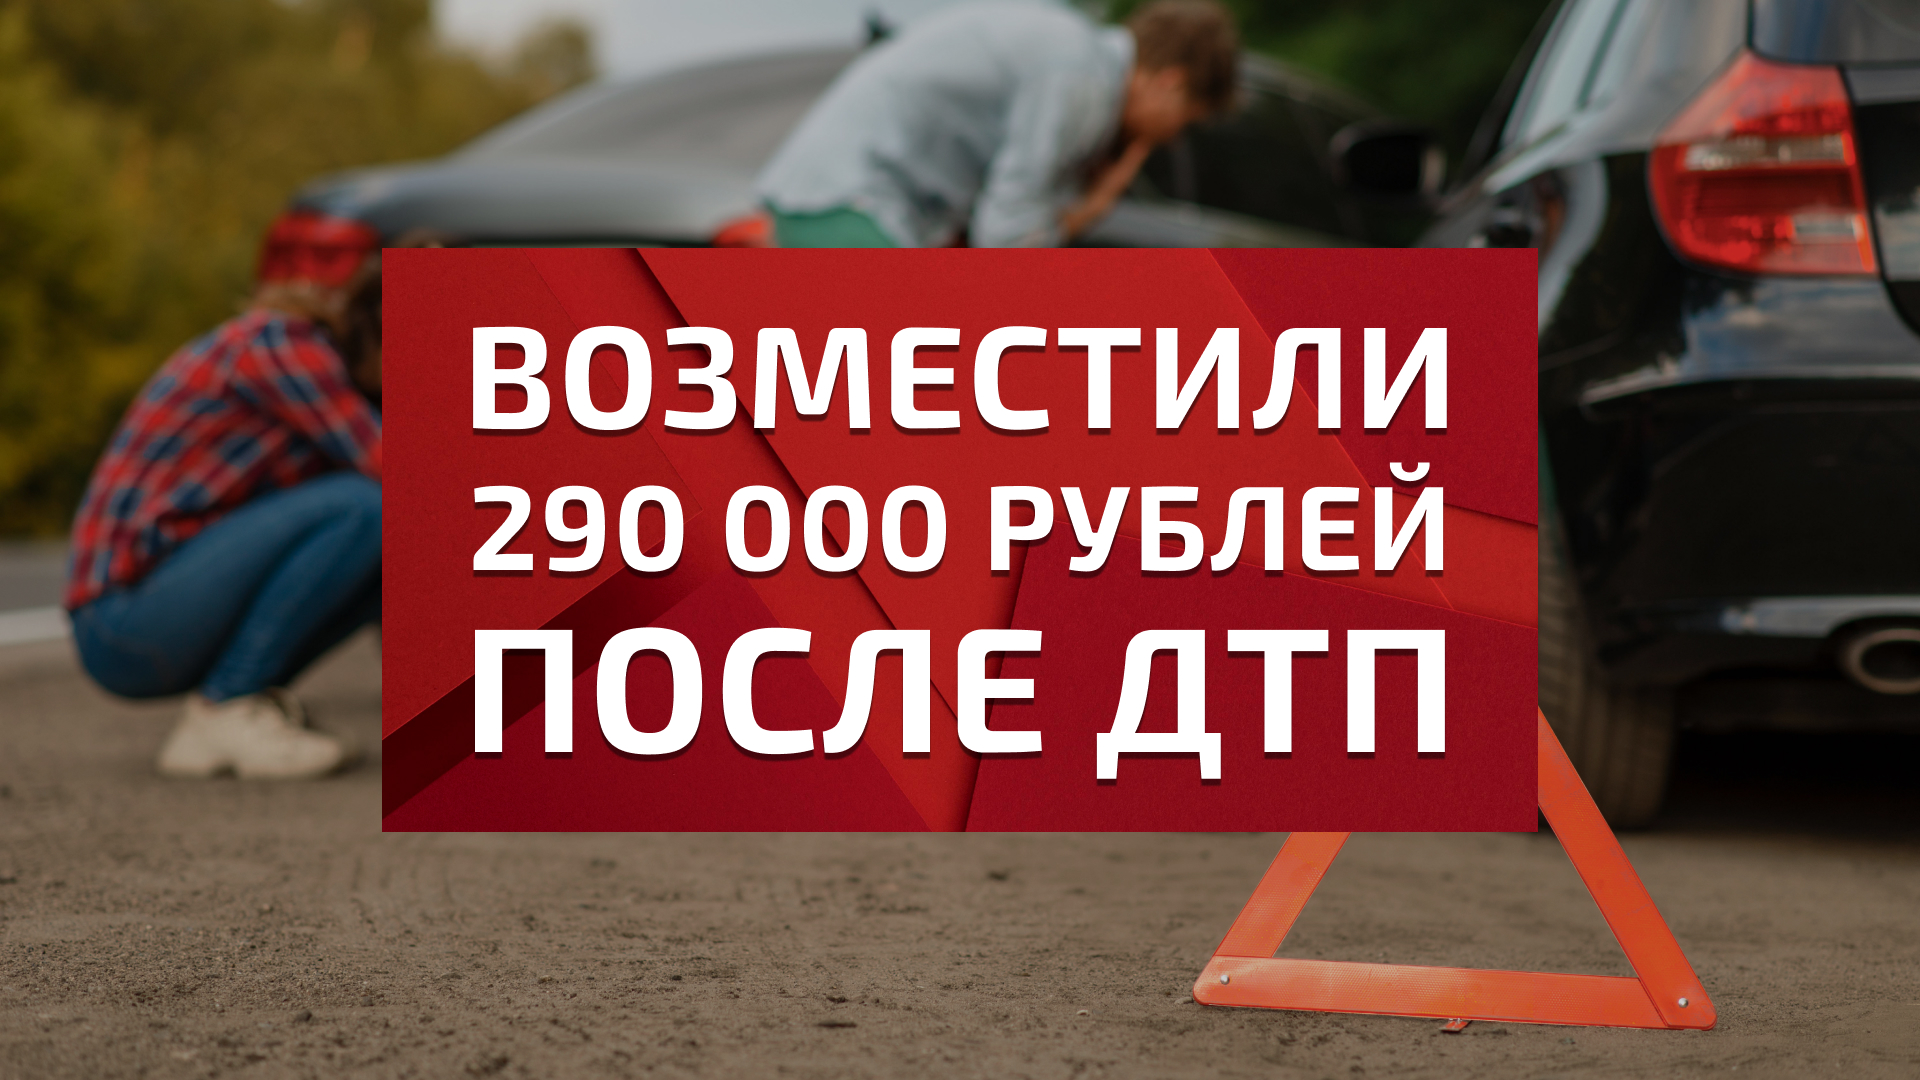 Возместили 290 000 рублей клиентке за материальный вред после ДТП